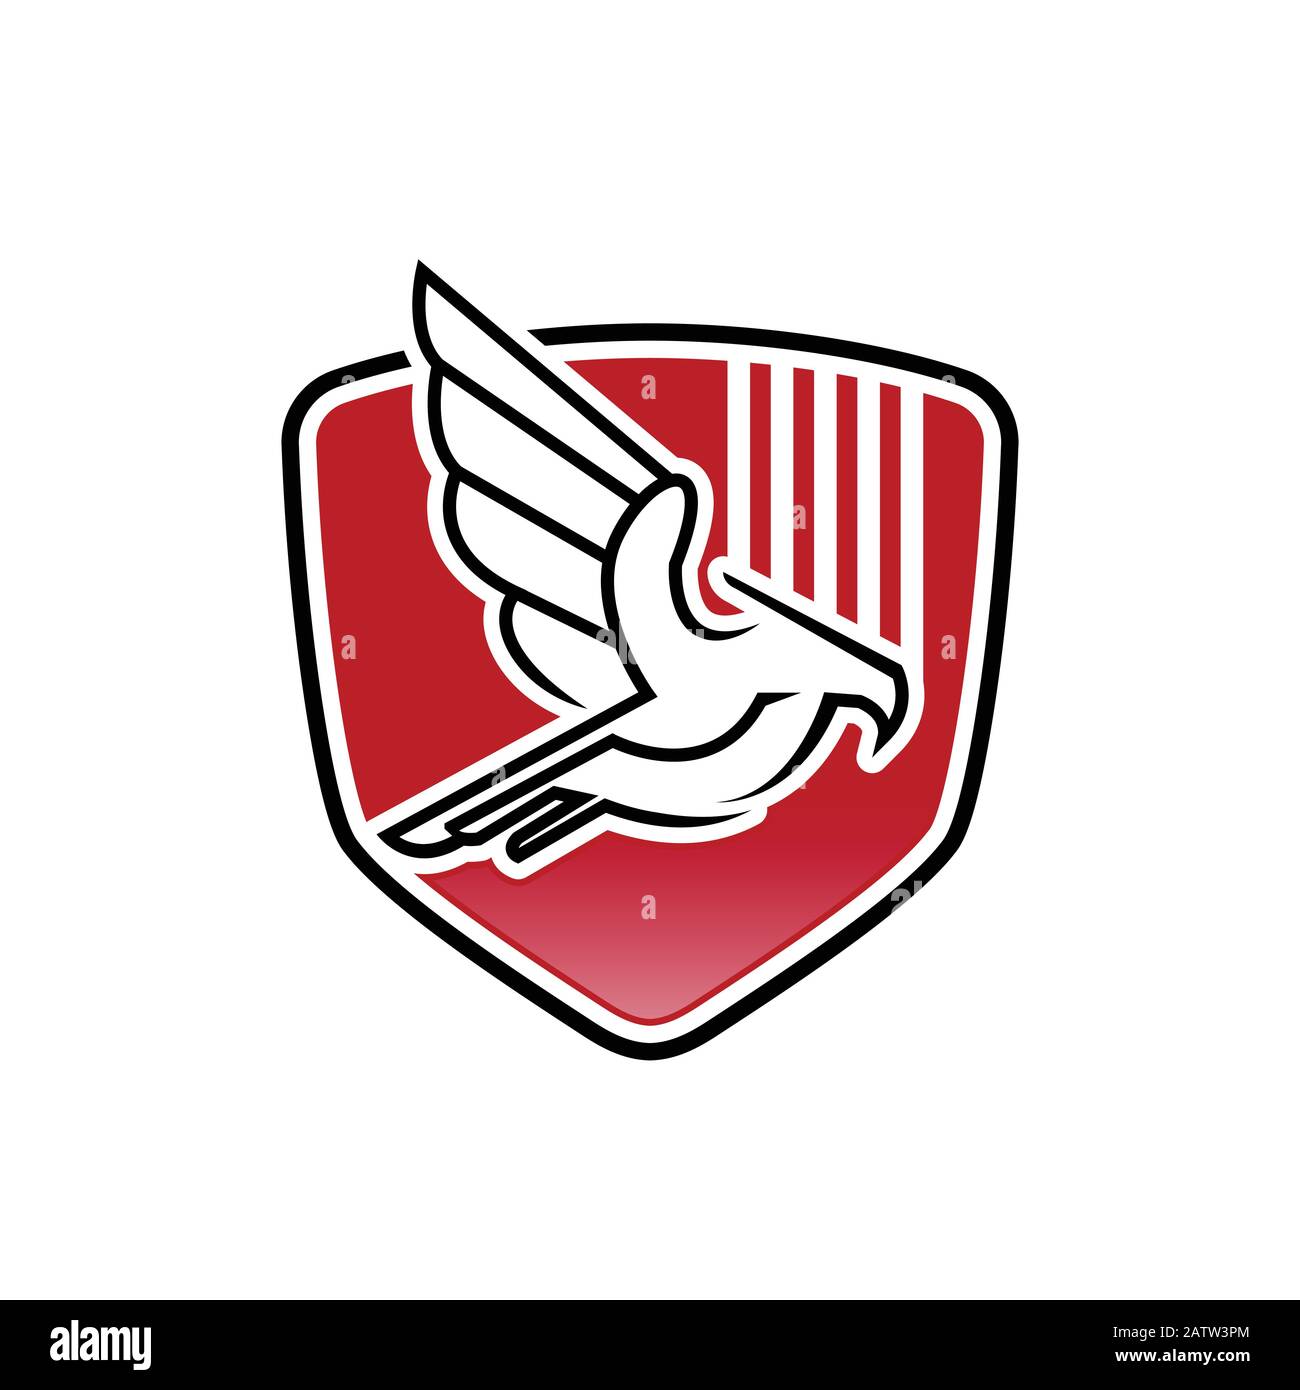 Astratto Eagle Fly logo, negativo spazio testa aquila volare logo Illustrazione Vettoriale